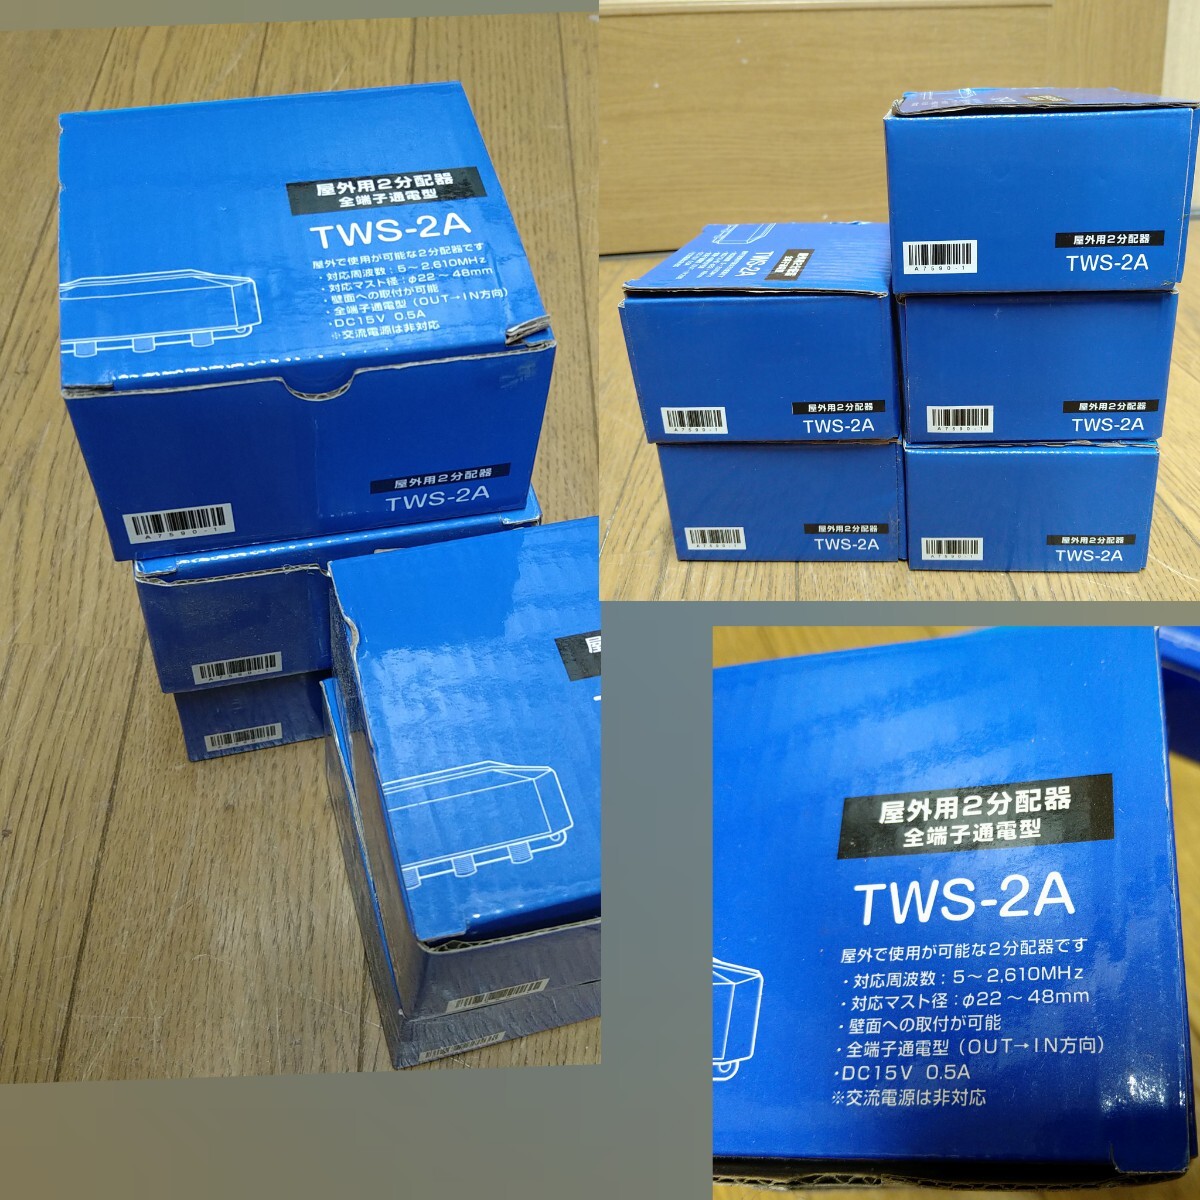 AC85 дистрибьютор TWS-2A 5 коробка нераспечатанный не использовался наружный для 2 дистрибьютор все терминал электризация type 